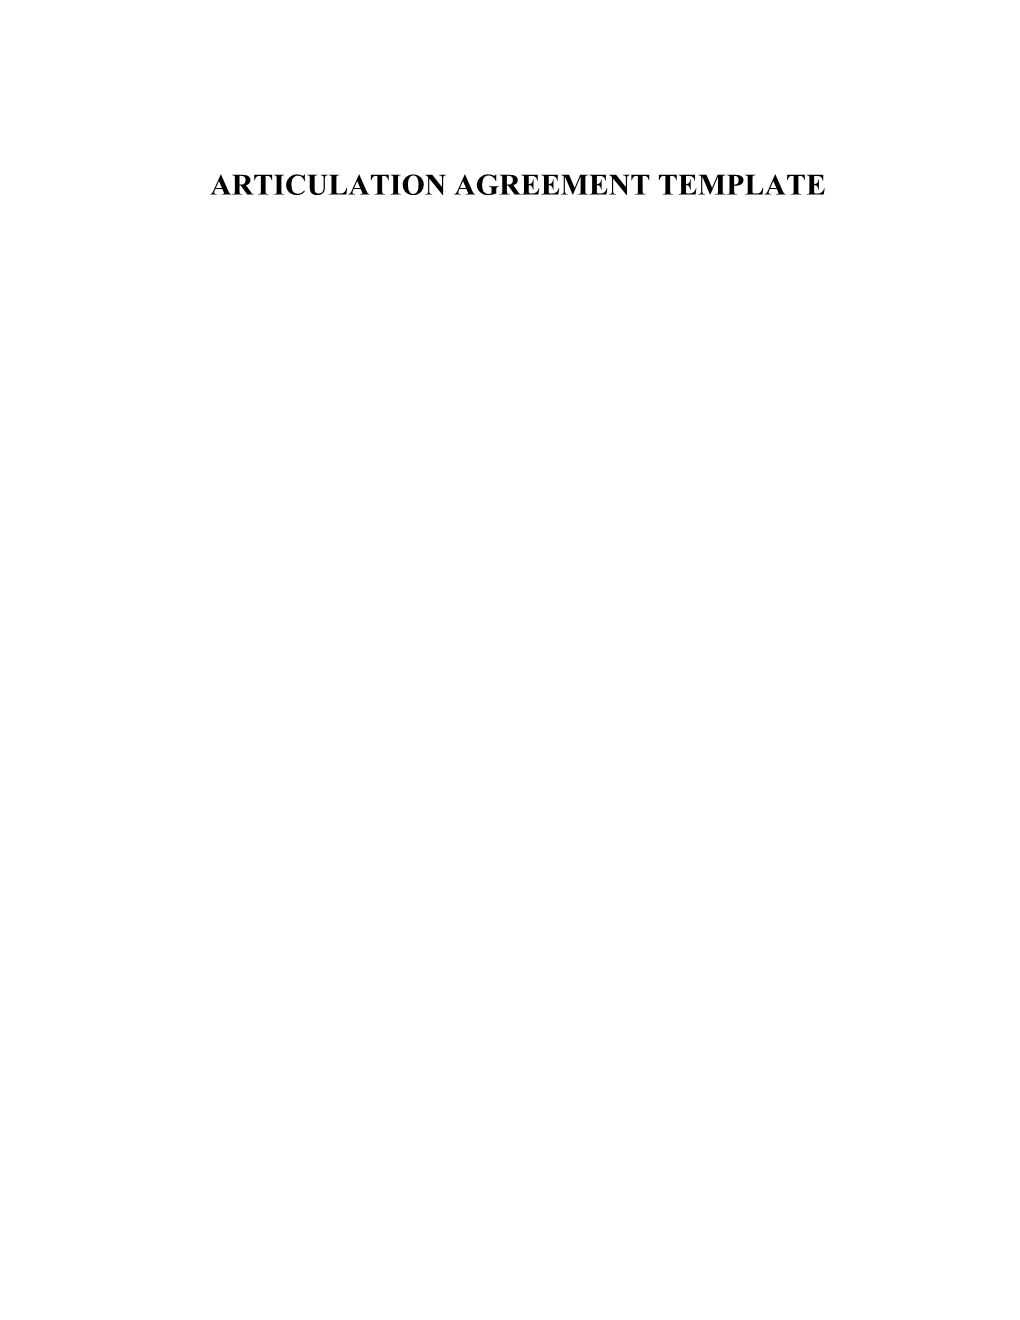 Articulation Agreement Template